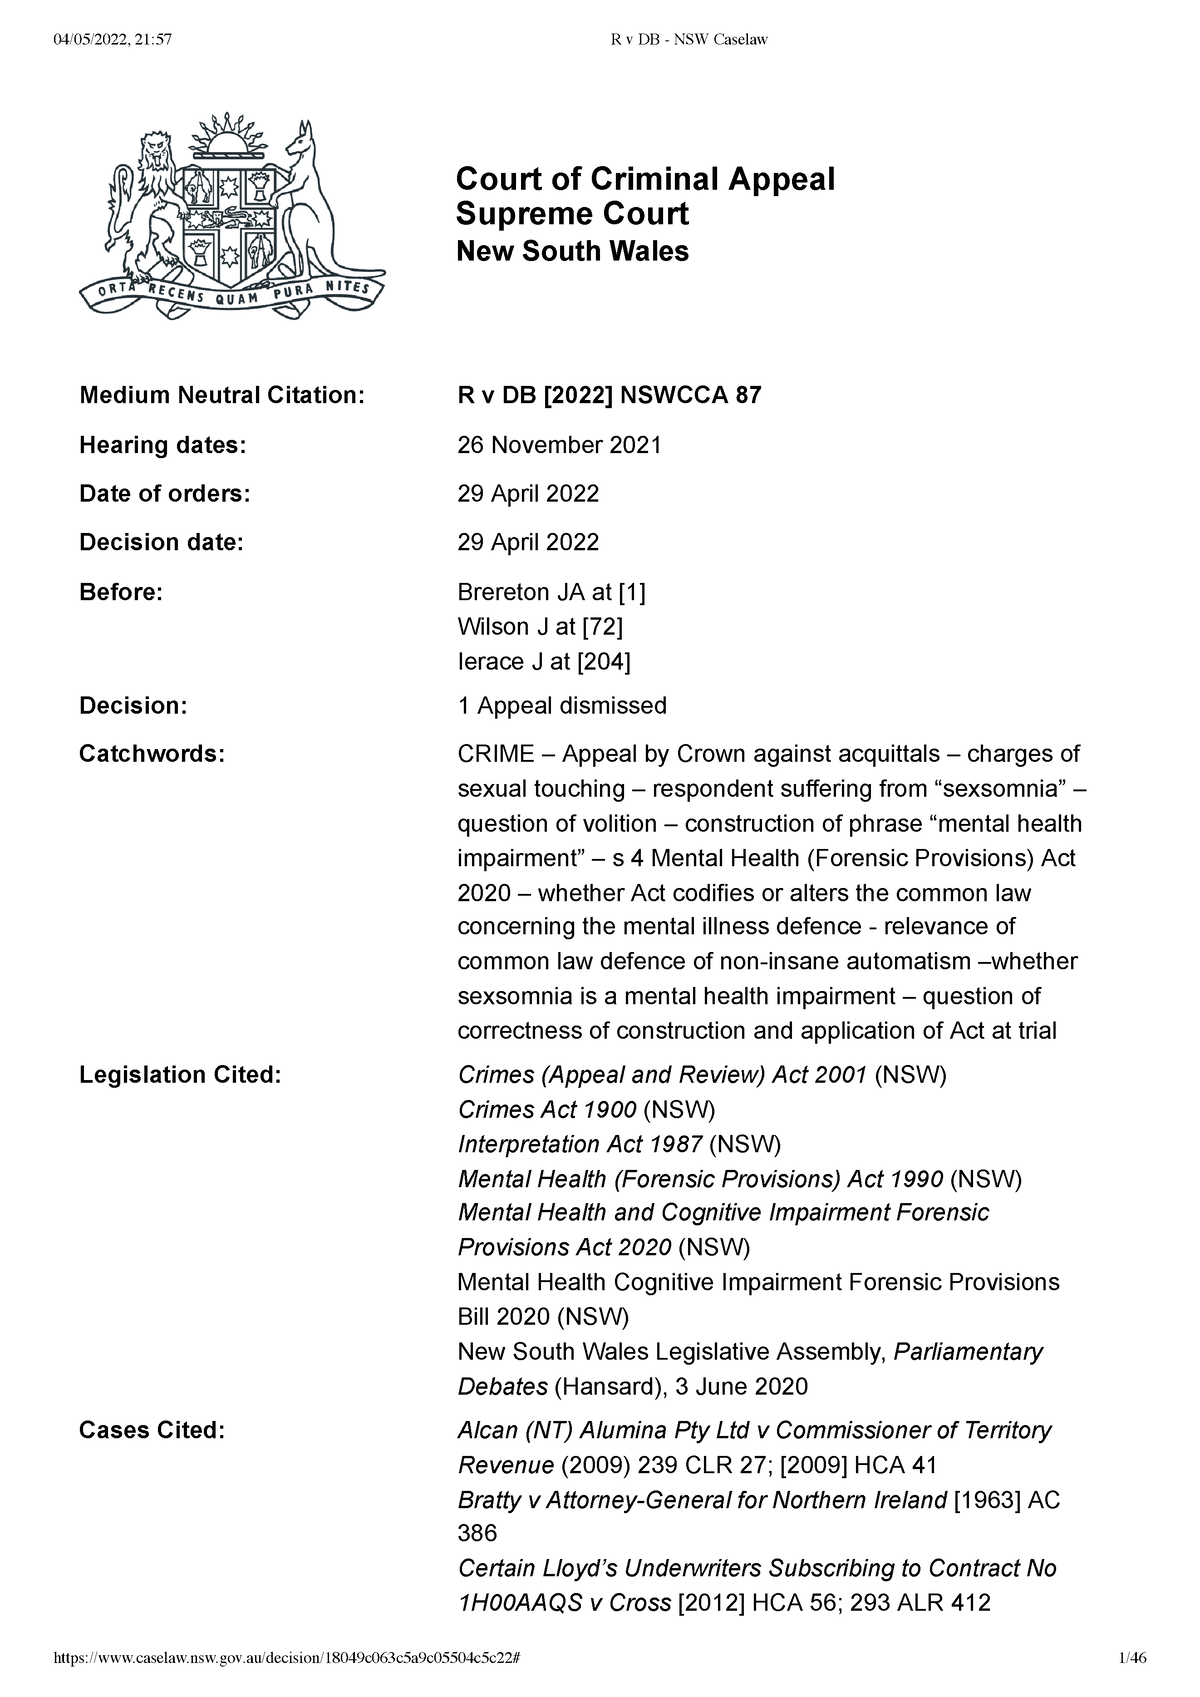 R v DB NSW Caselaw n/a Medium Neutral Citation Hearing dates